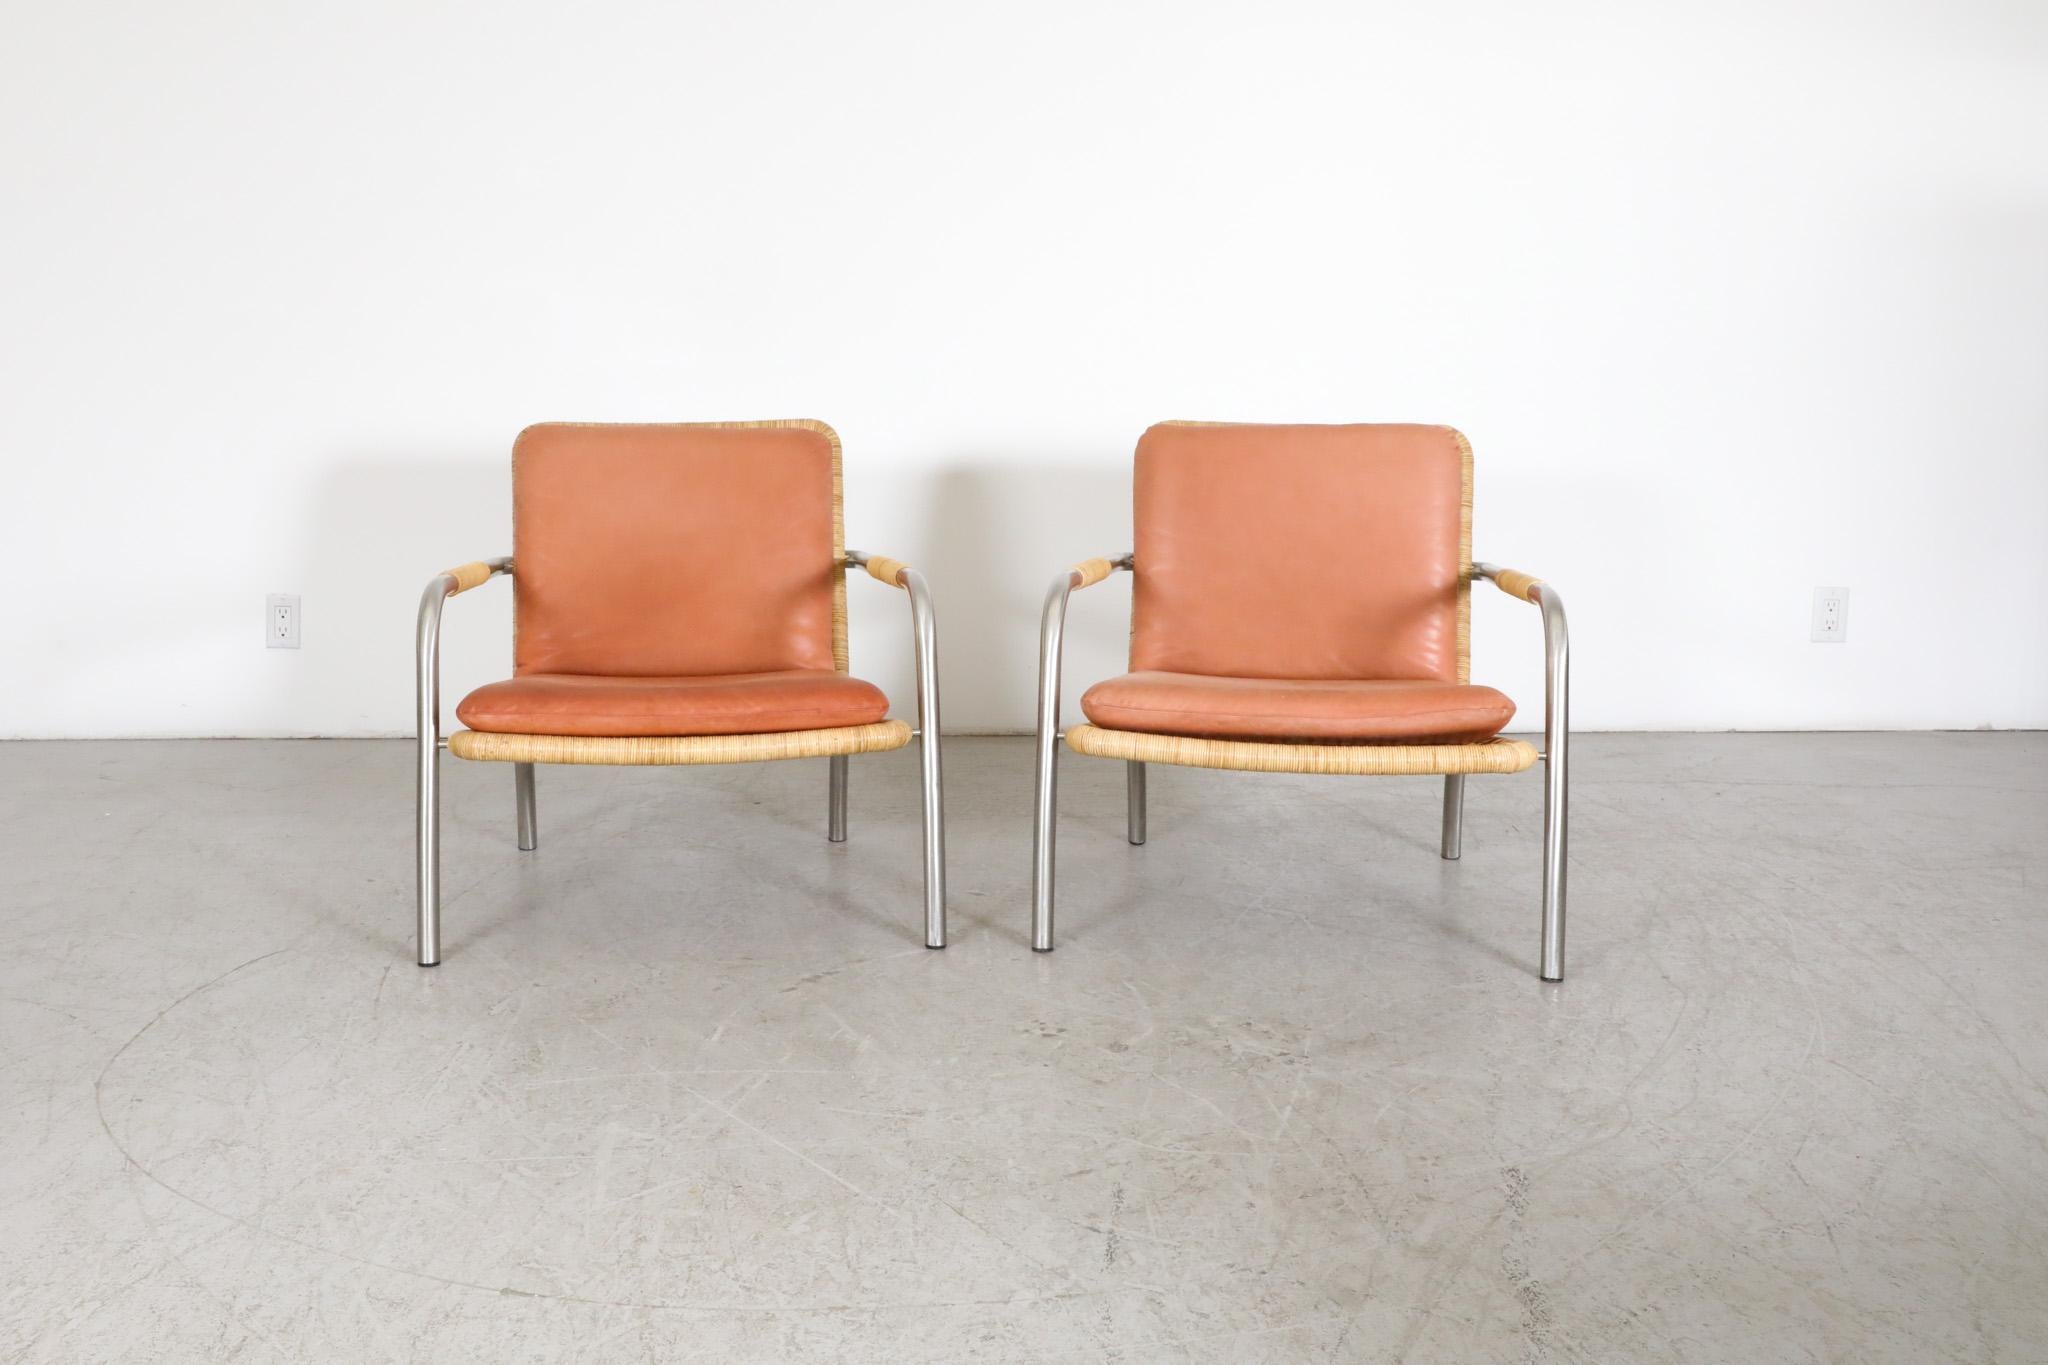 Atemberaubende Paar Mid-Century, Martin Visser Stil geflochtenen Rattan Lounge-Sessel mit schönen Terrakotta getönten Lederkissen auf robusten gebogenen Chromrahmen. Schöne und bequeme Loungesessel mit einem schönen Gleichgewicht zwischen Metall und